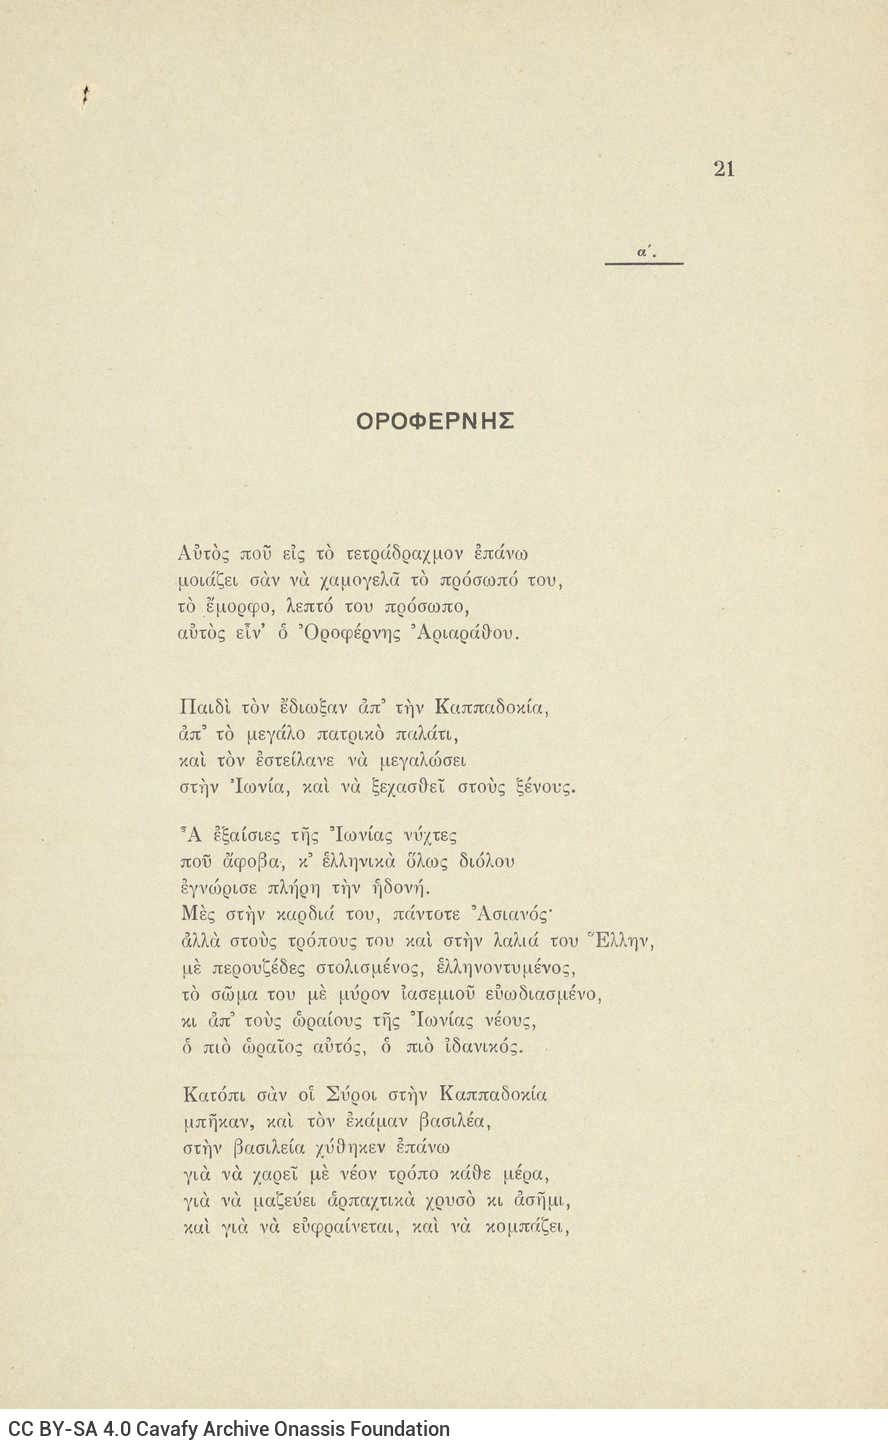 Ποιητική Συλλογή του Καβάφη με 57 ποιήματα της περιόδου 1912-1920. Χαρτόν�